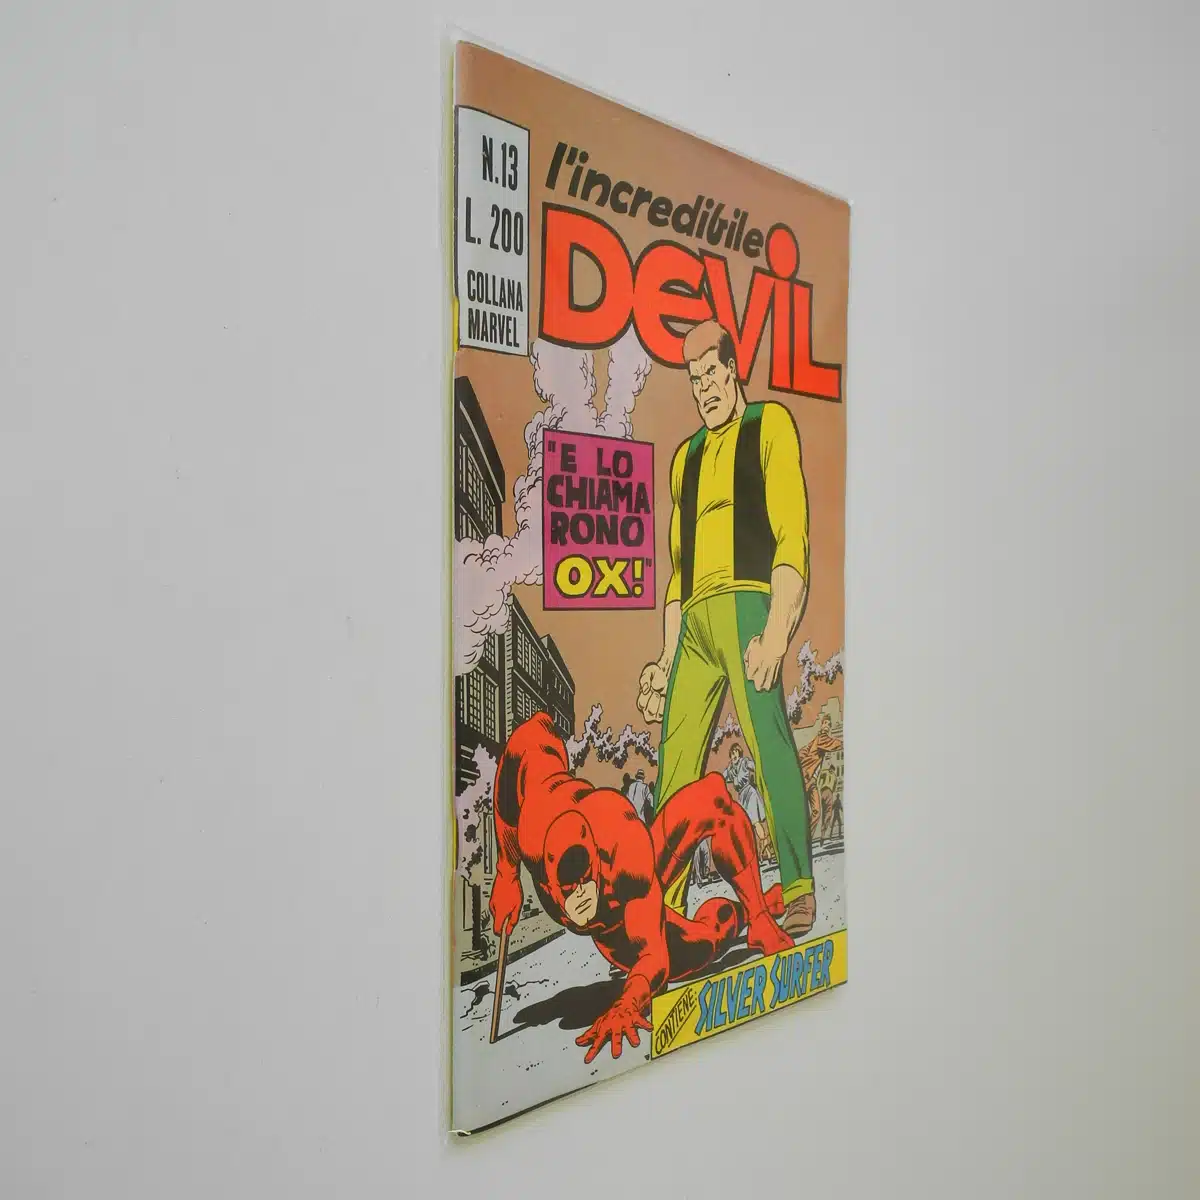 L’Incredibile Devil n. 13 Lo chiamarono Ox